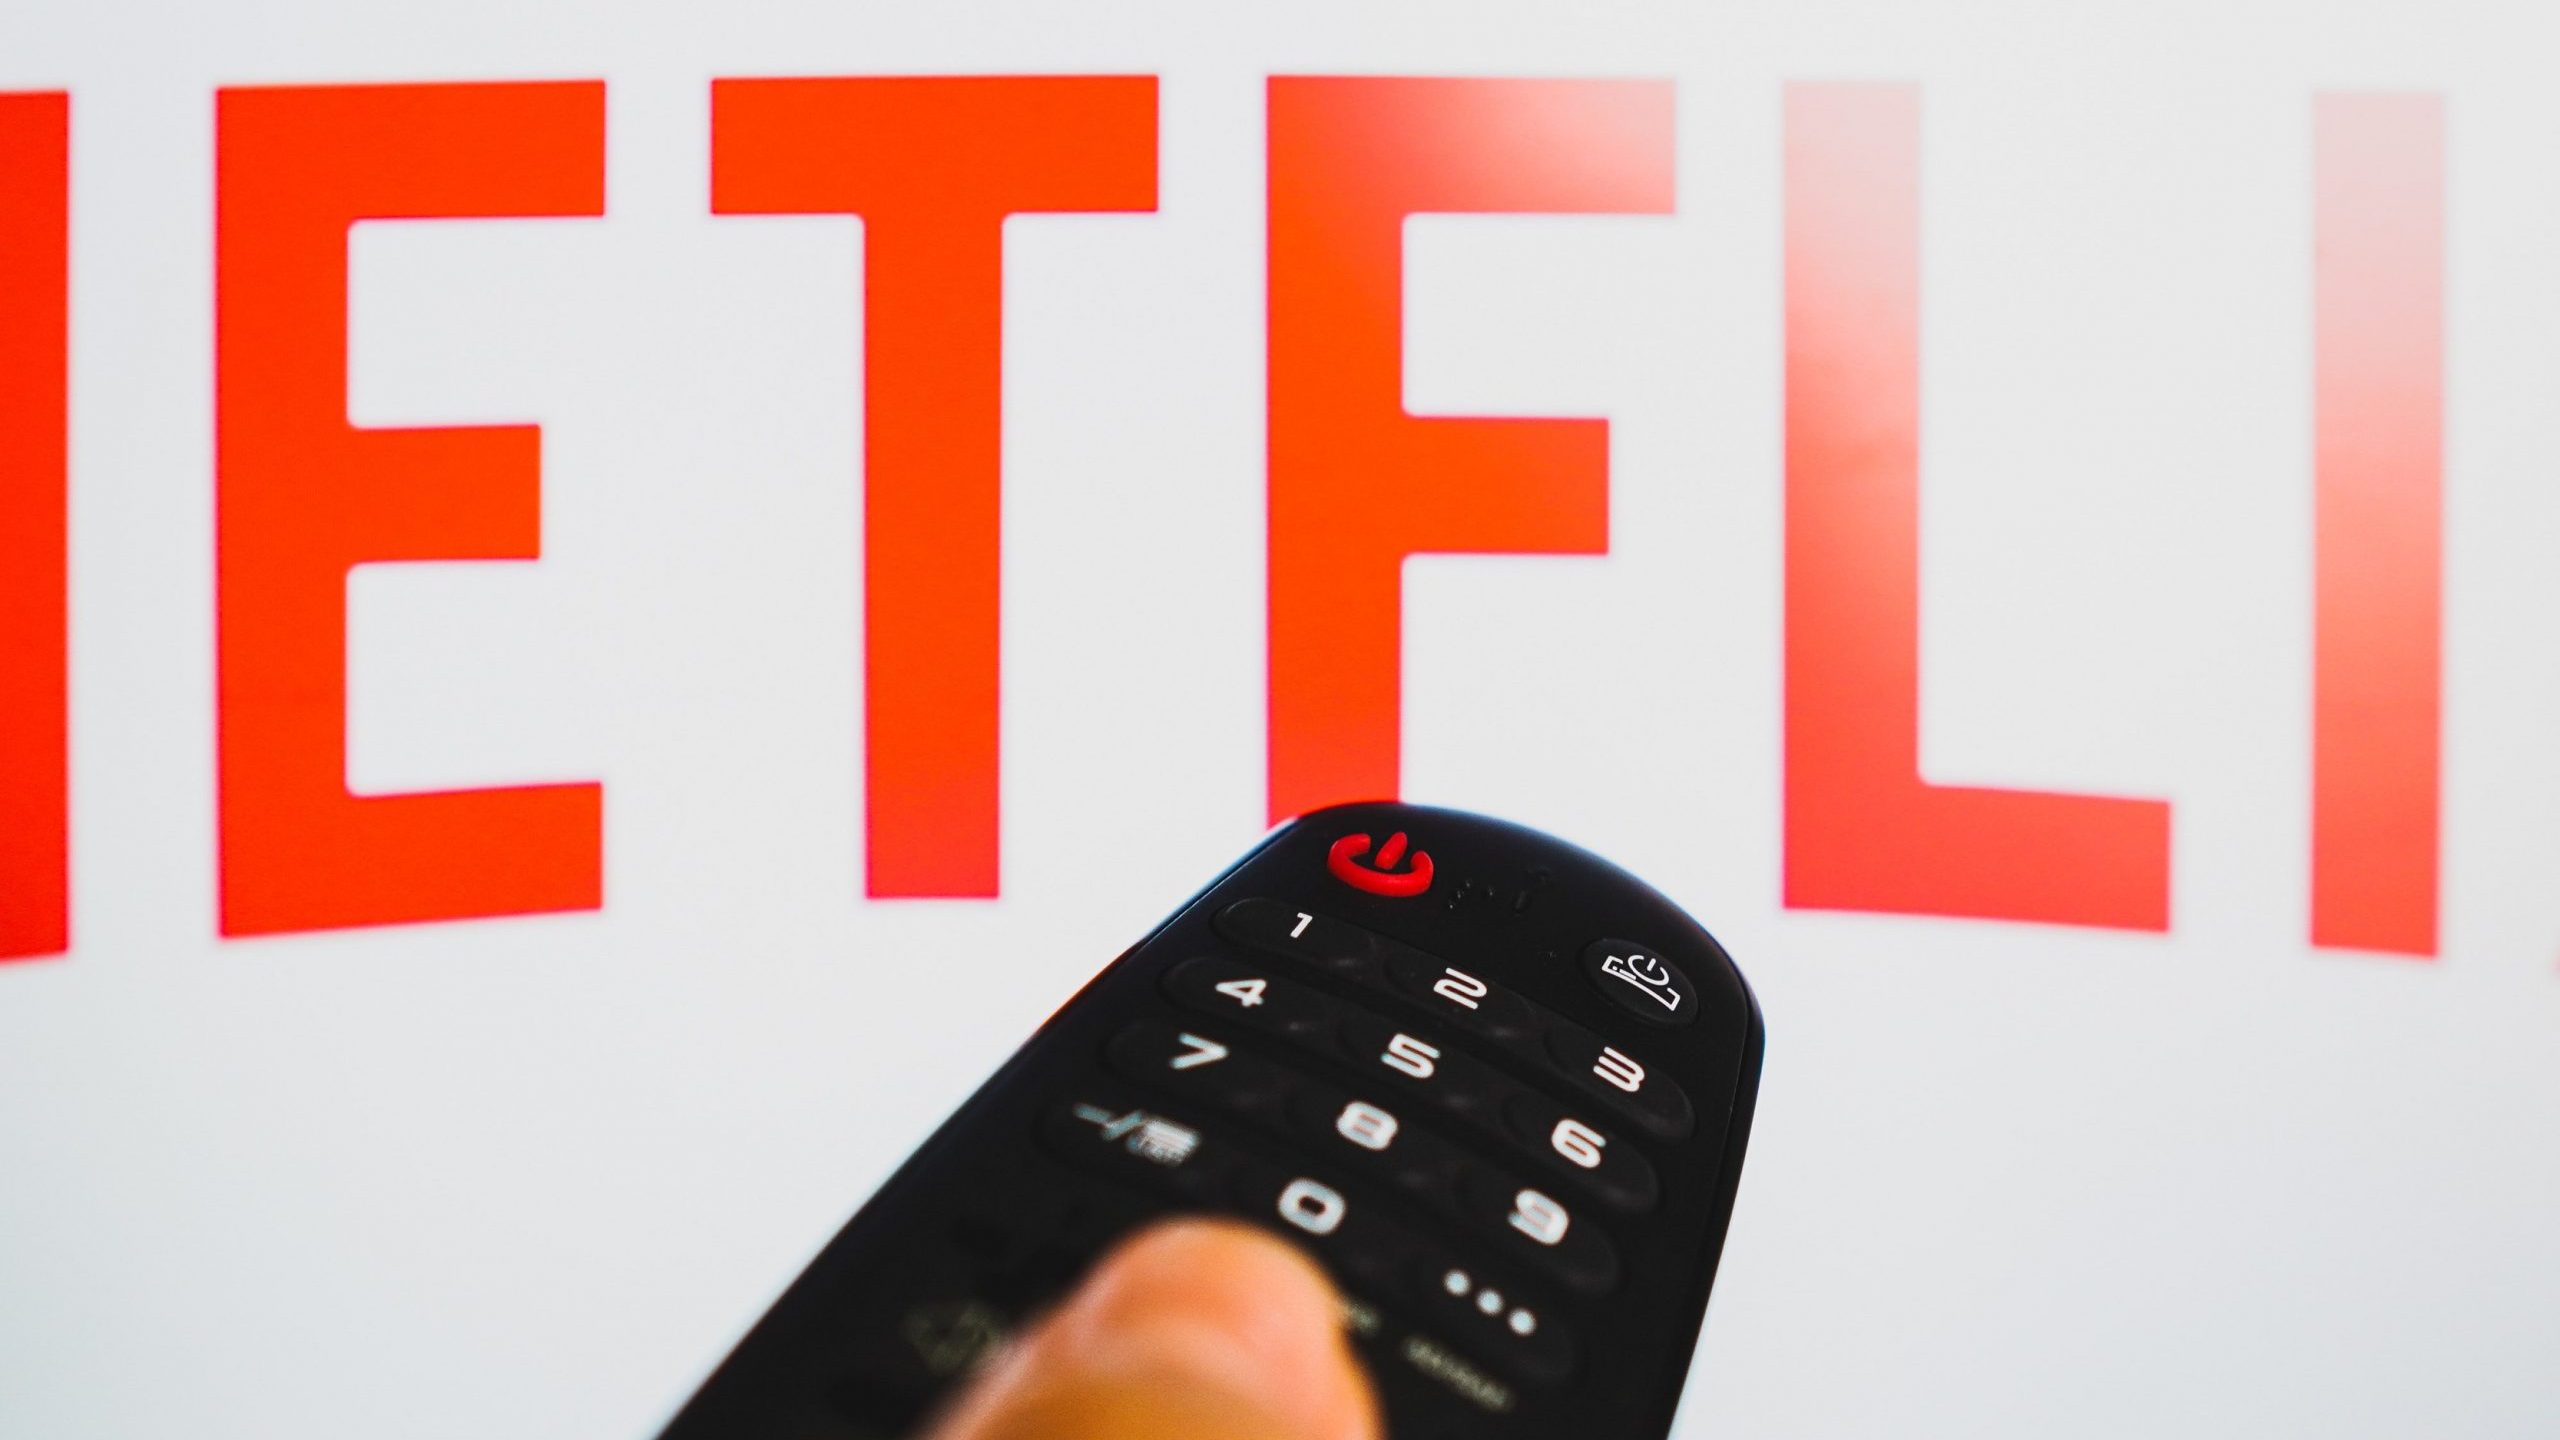 Un usuario pulsa el botón en el mando a distancia para abrir Netflix en su televisor.